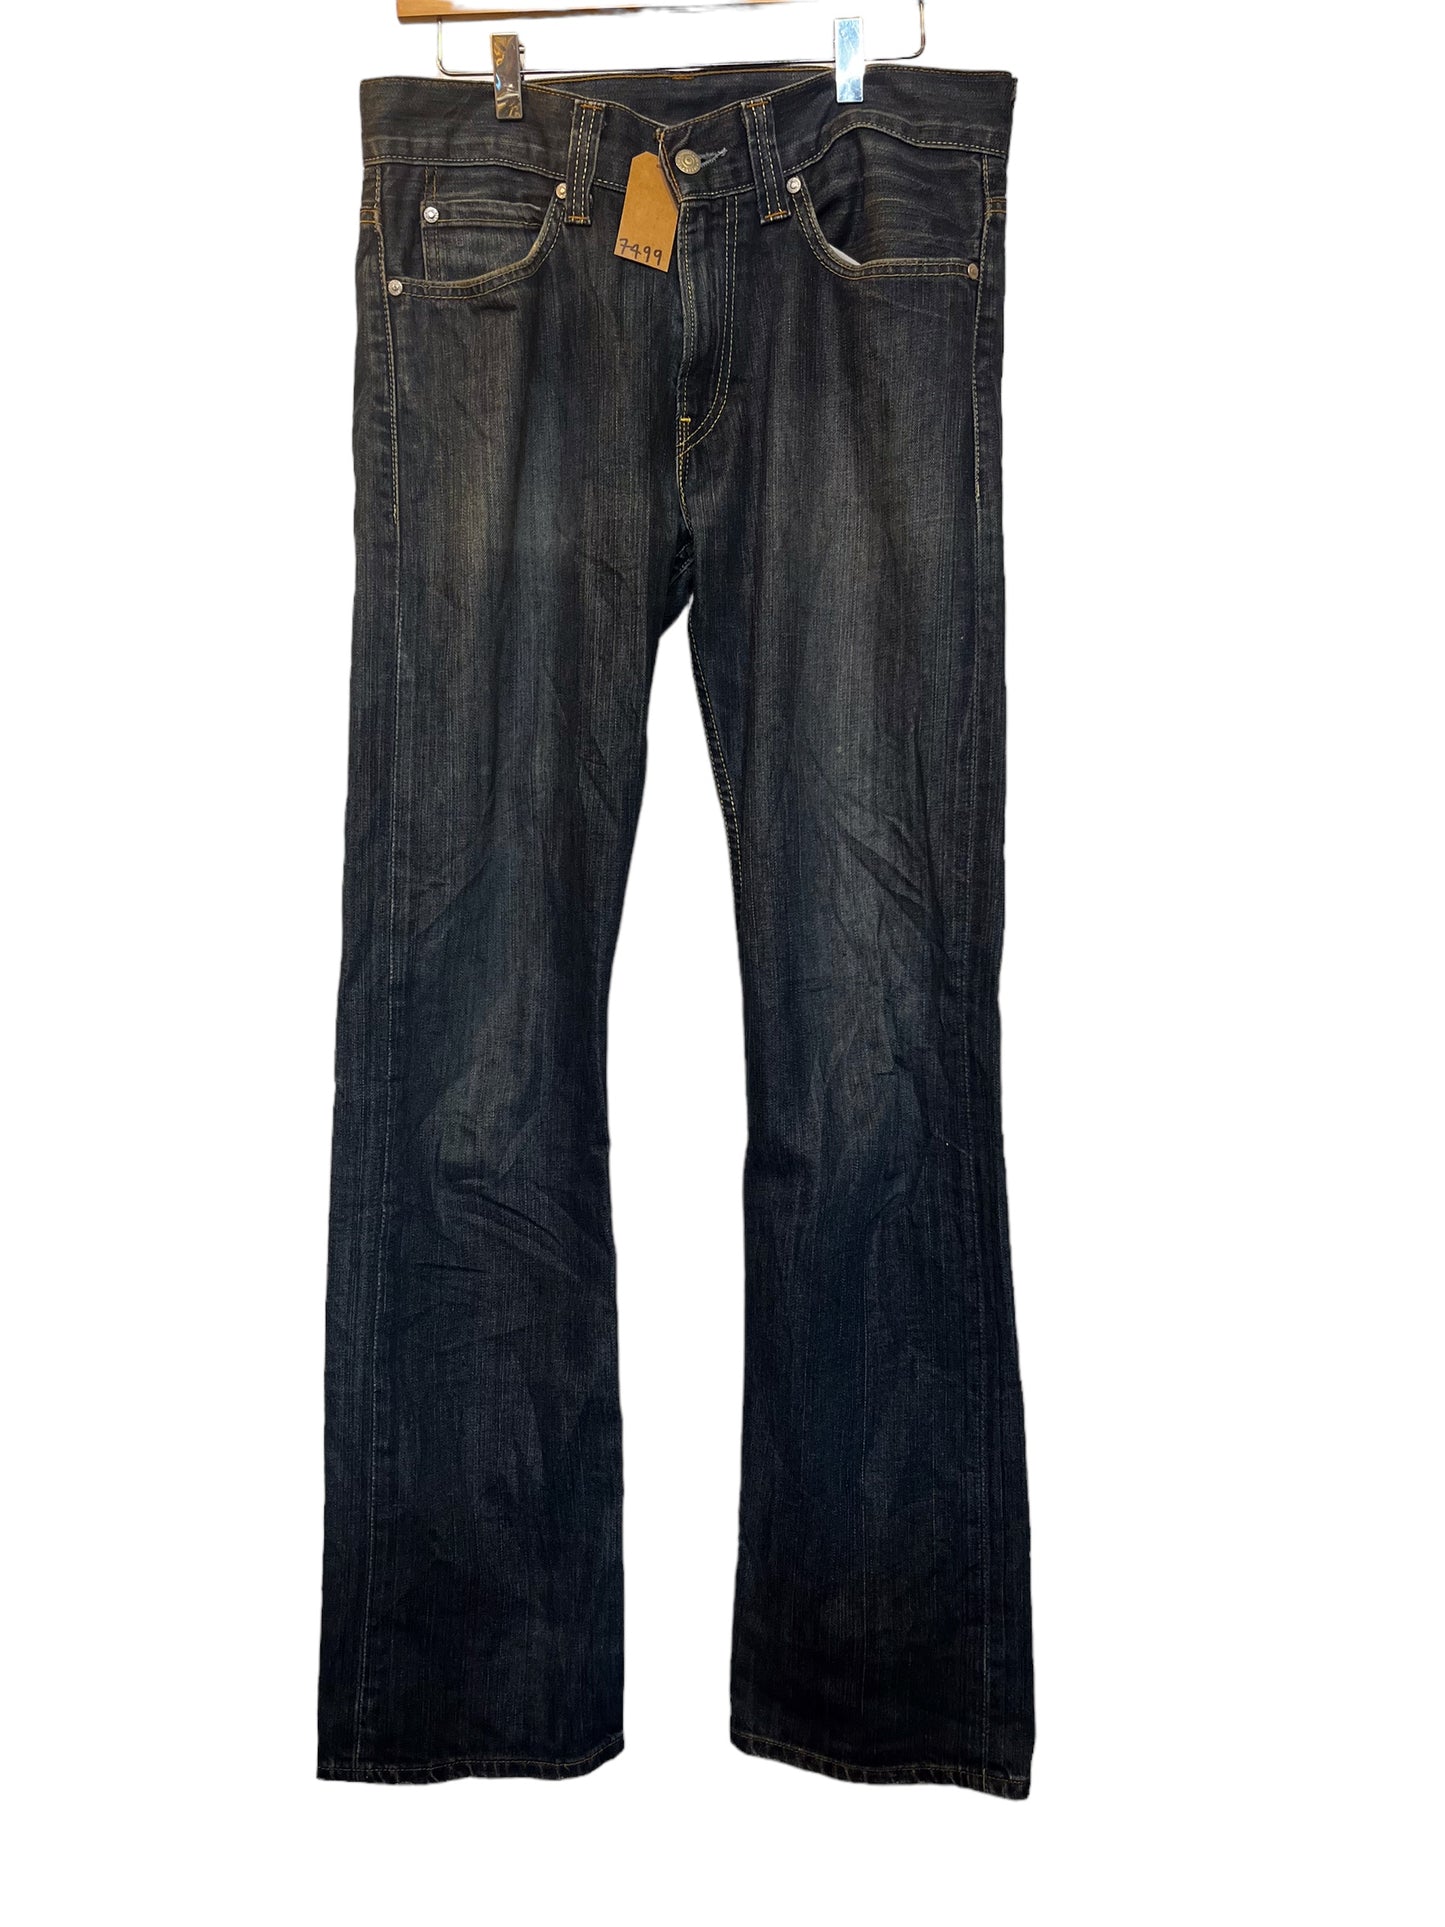 Levi 506 jeans (31x34)